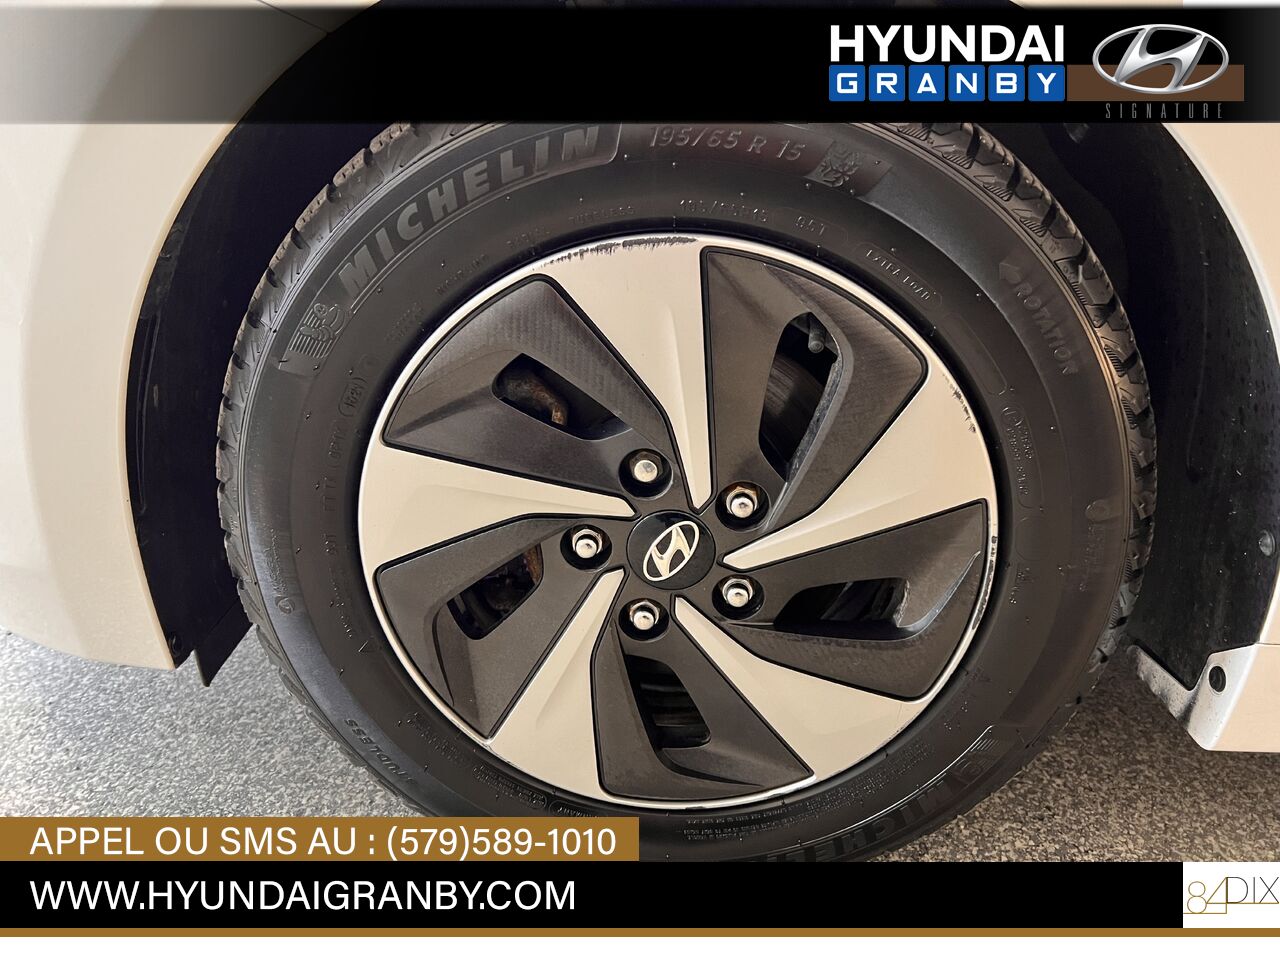 Hyundai Ioniq hybride 2017 Granby - photo #35